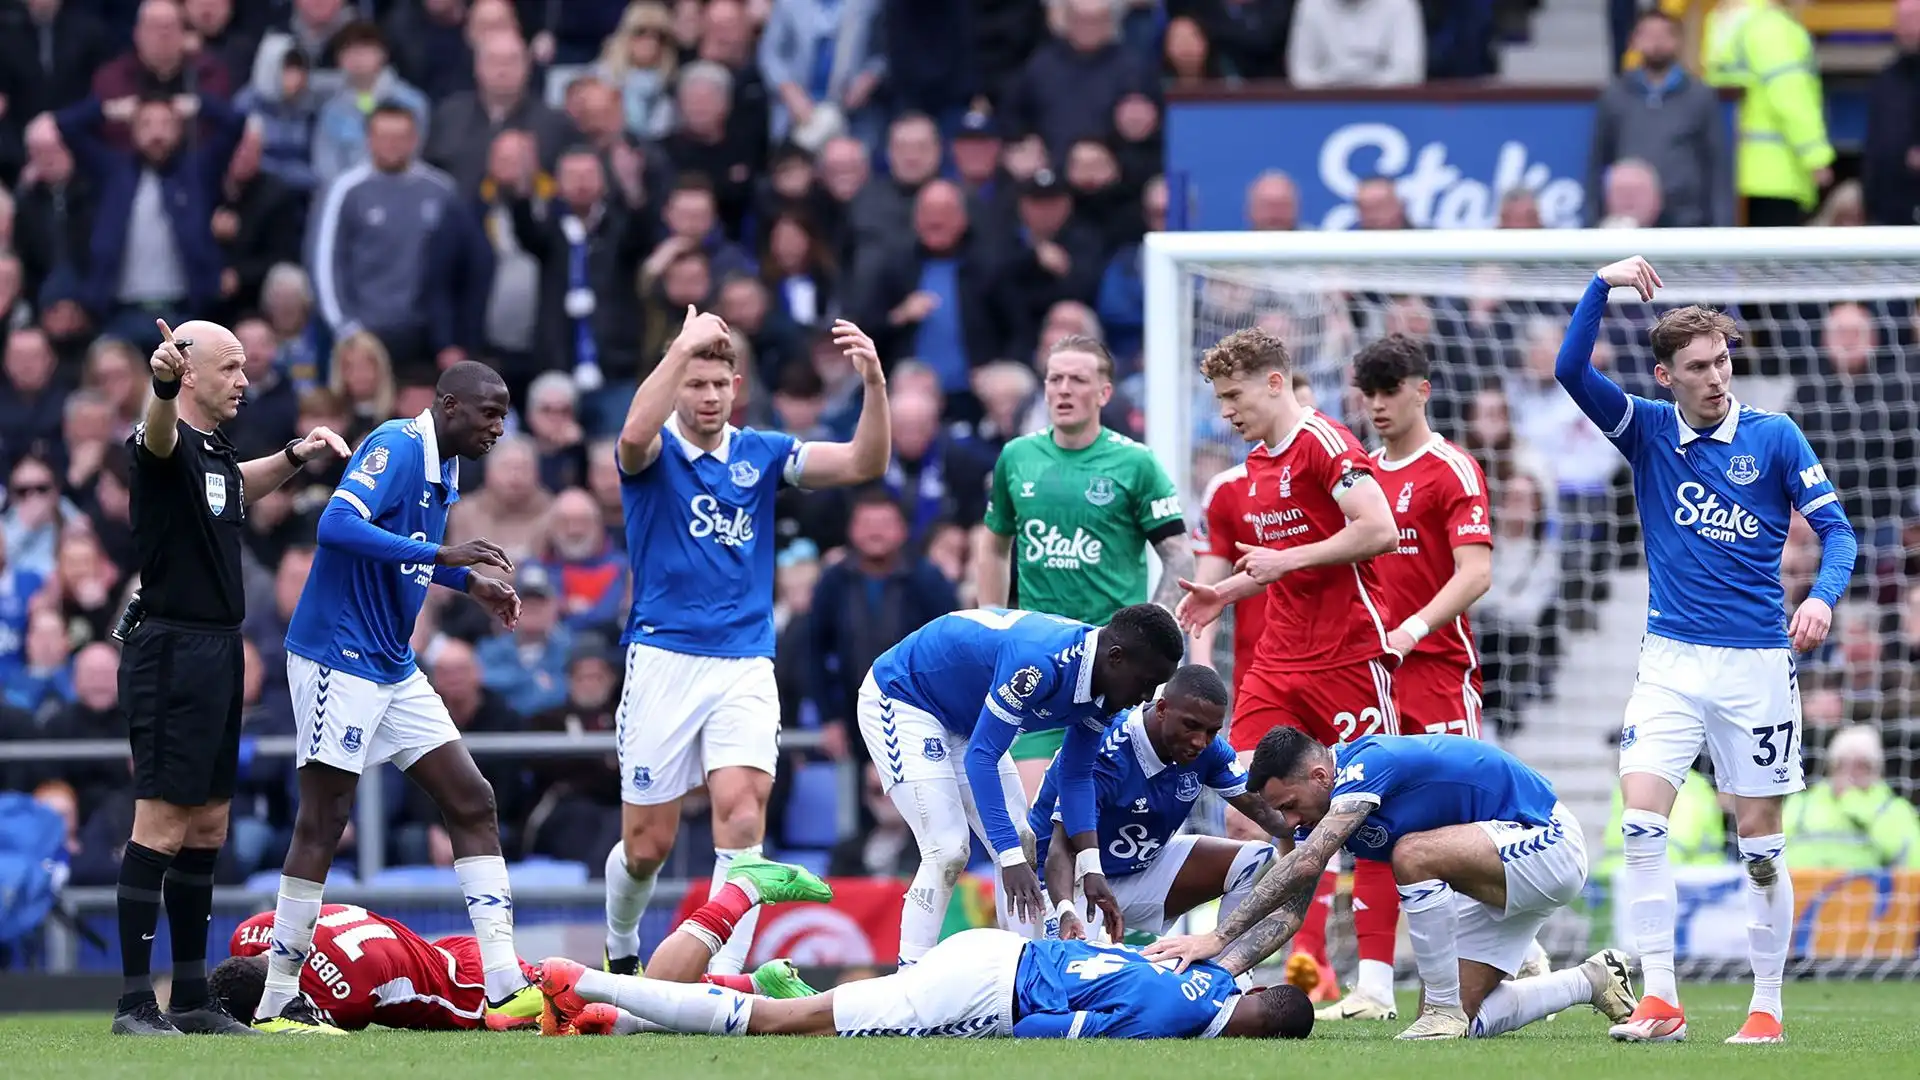 L'attaccante dell'Everton Beto ha perso i sensi dopo un brutto scontro di gioco